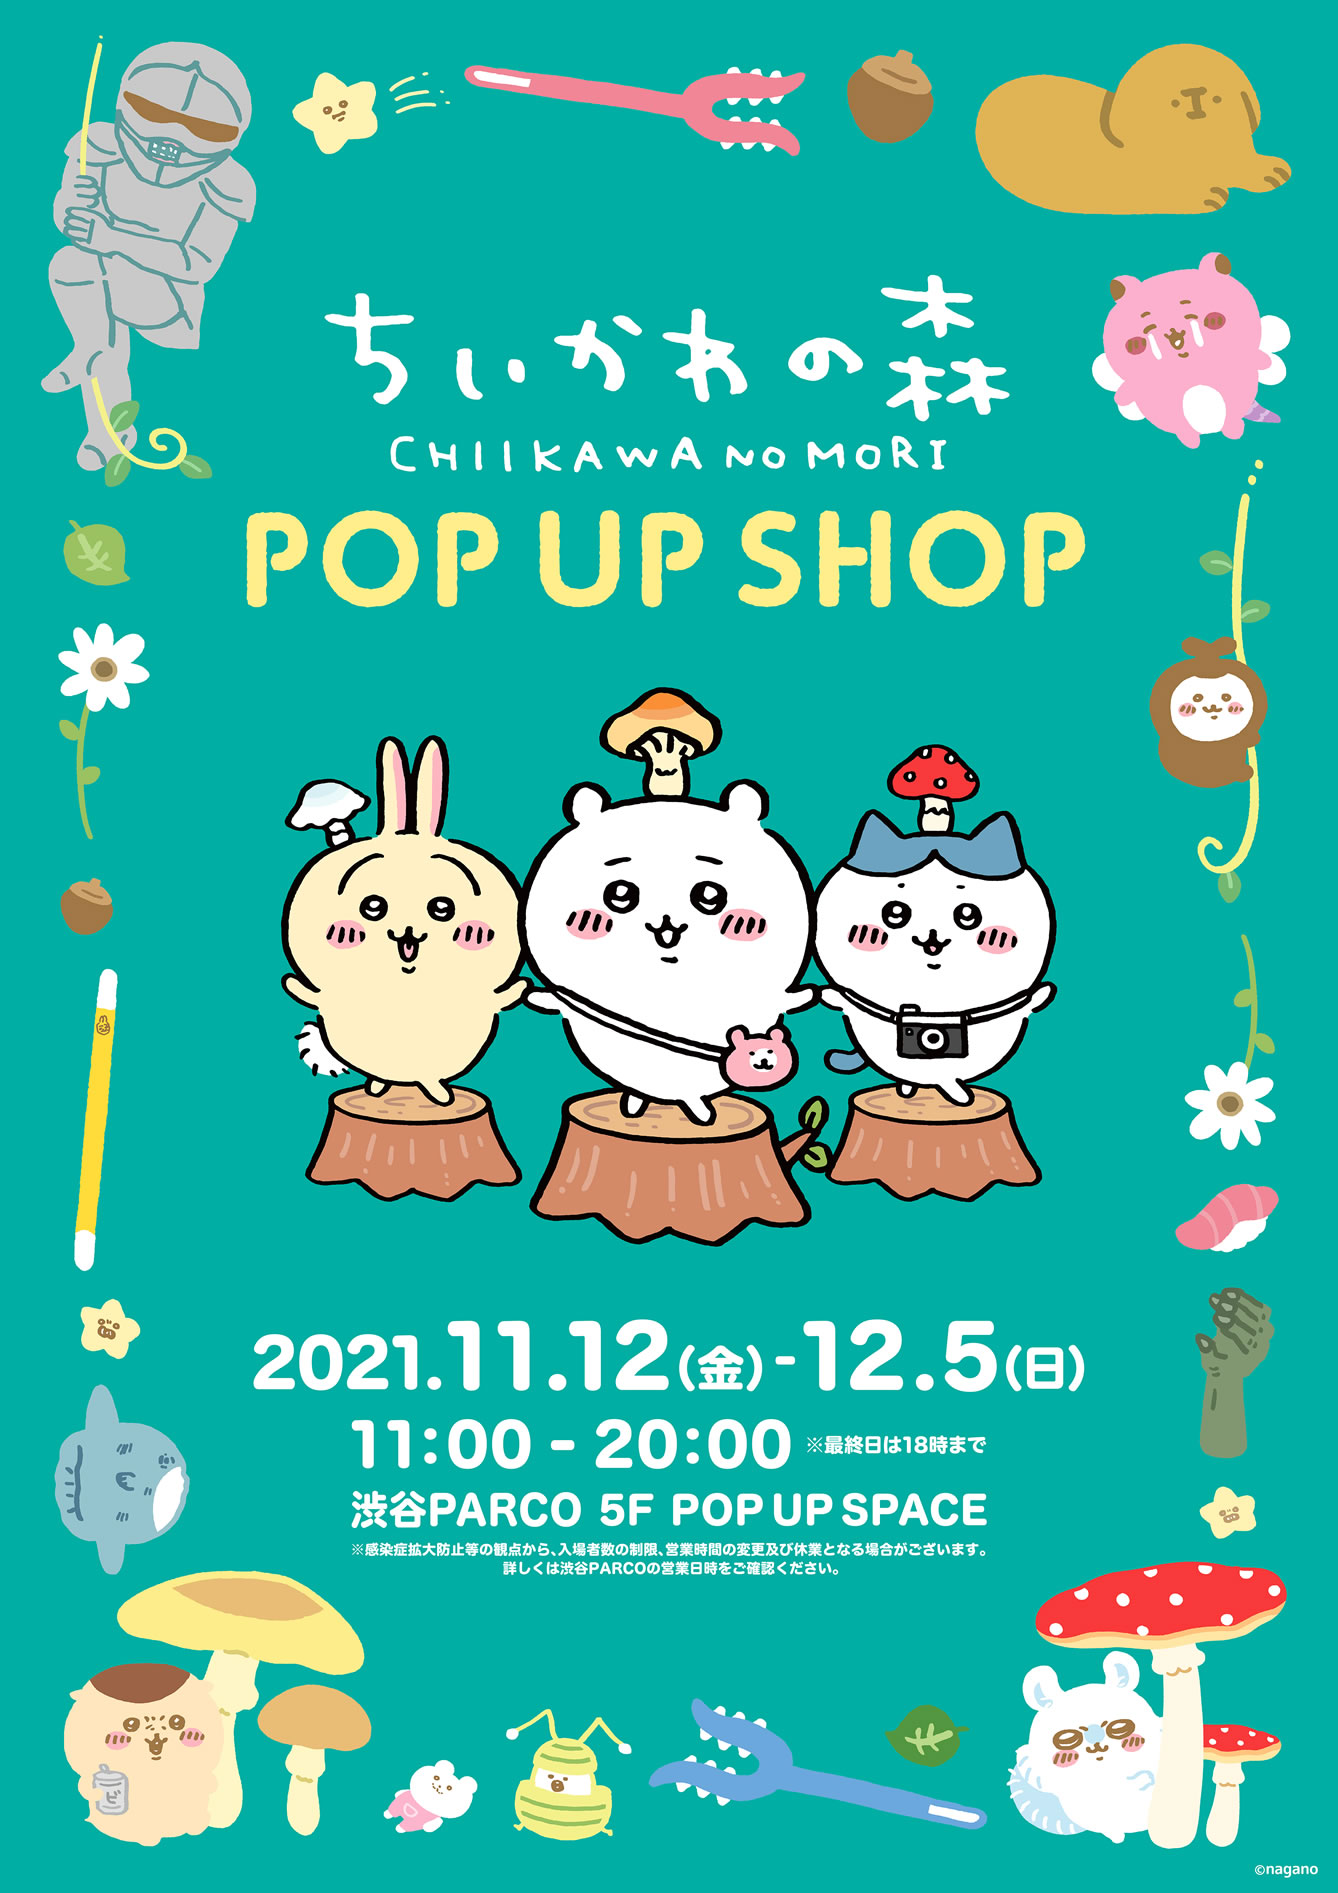 ちいかわの森 POP UP SHOP 渋谷